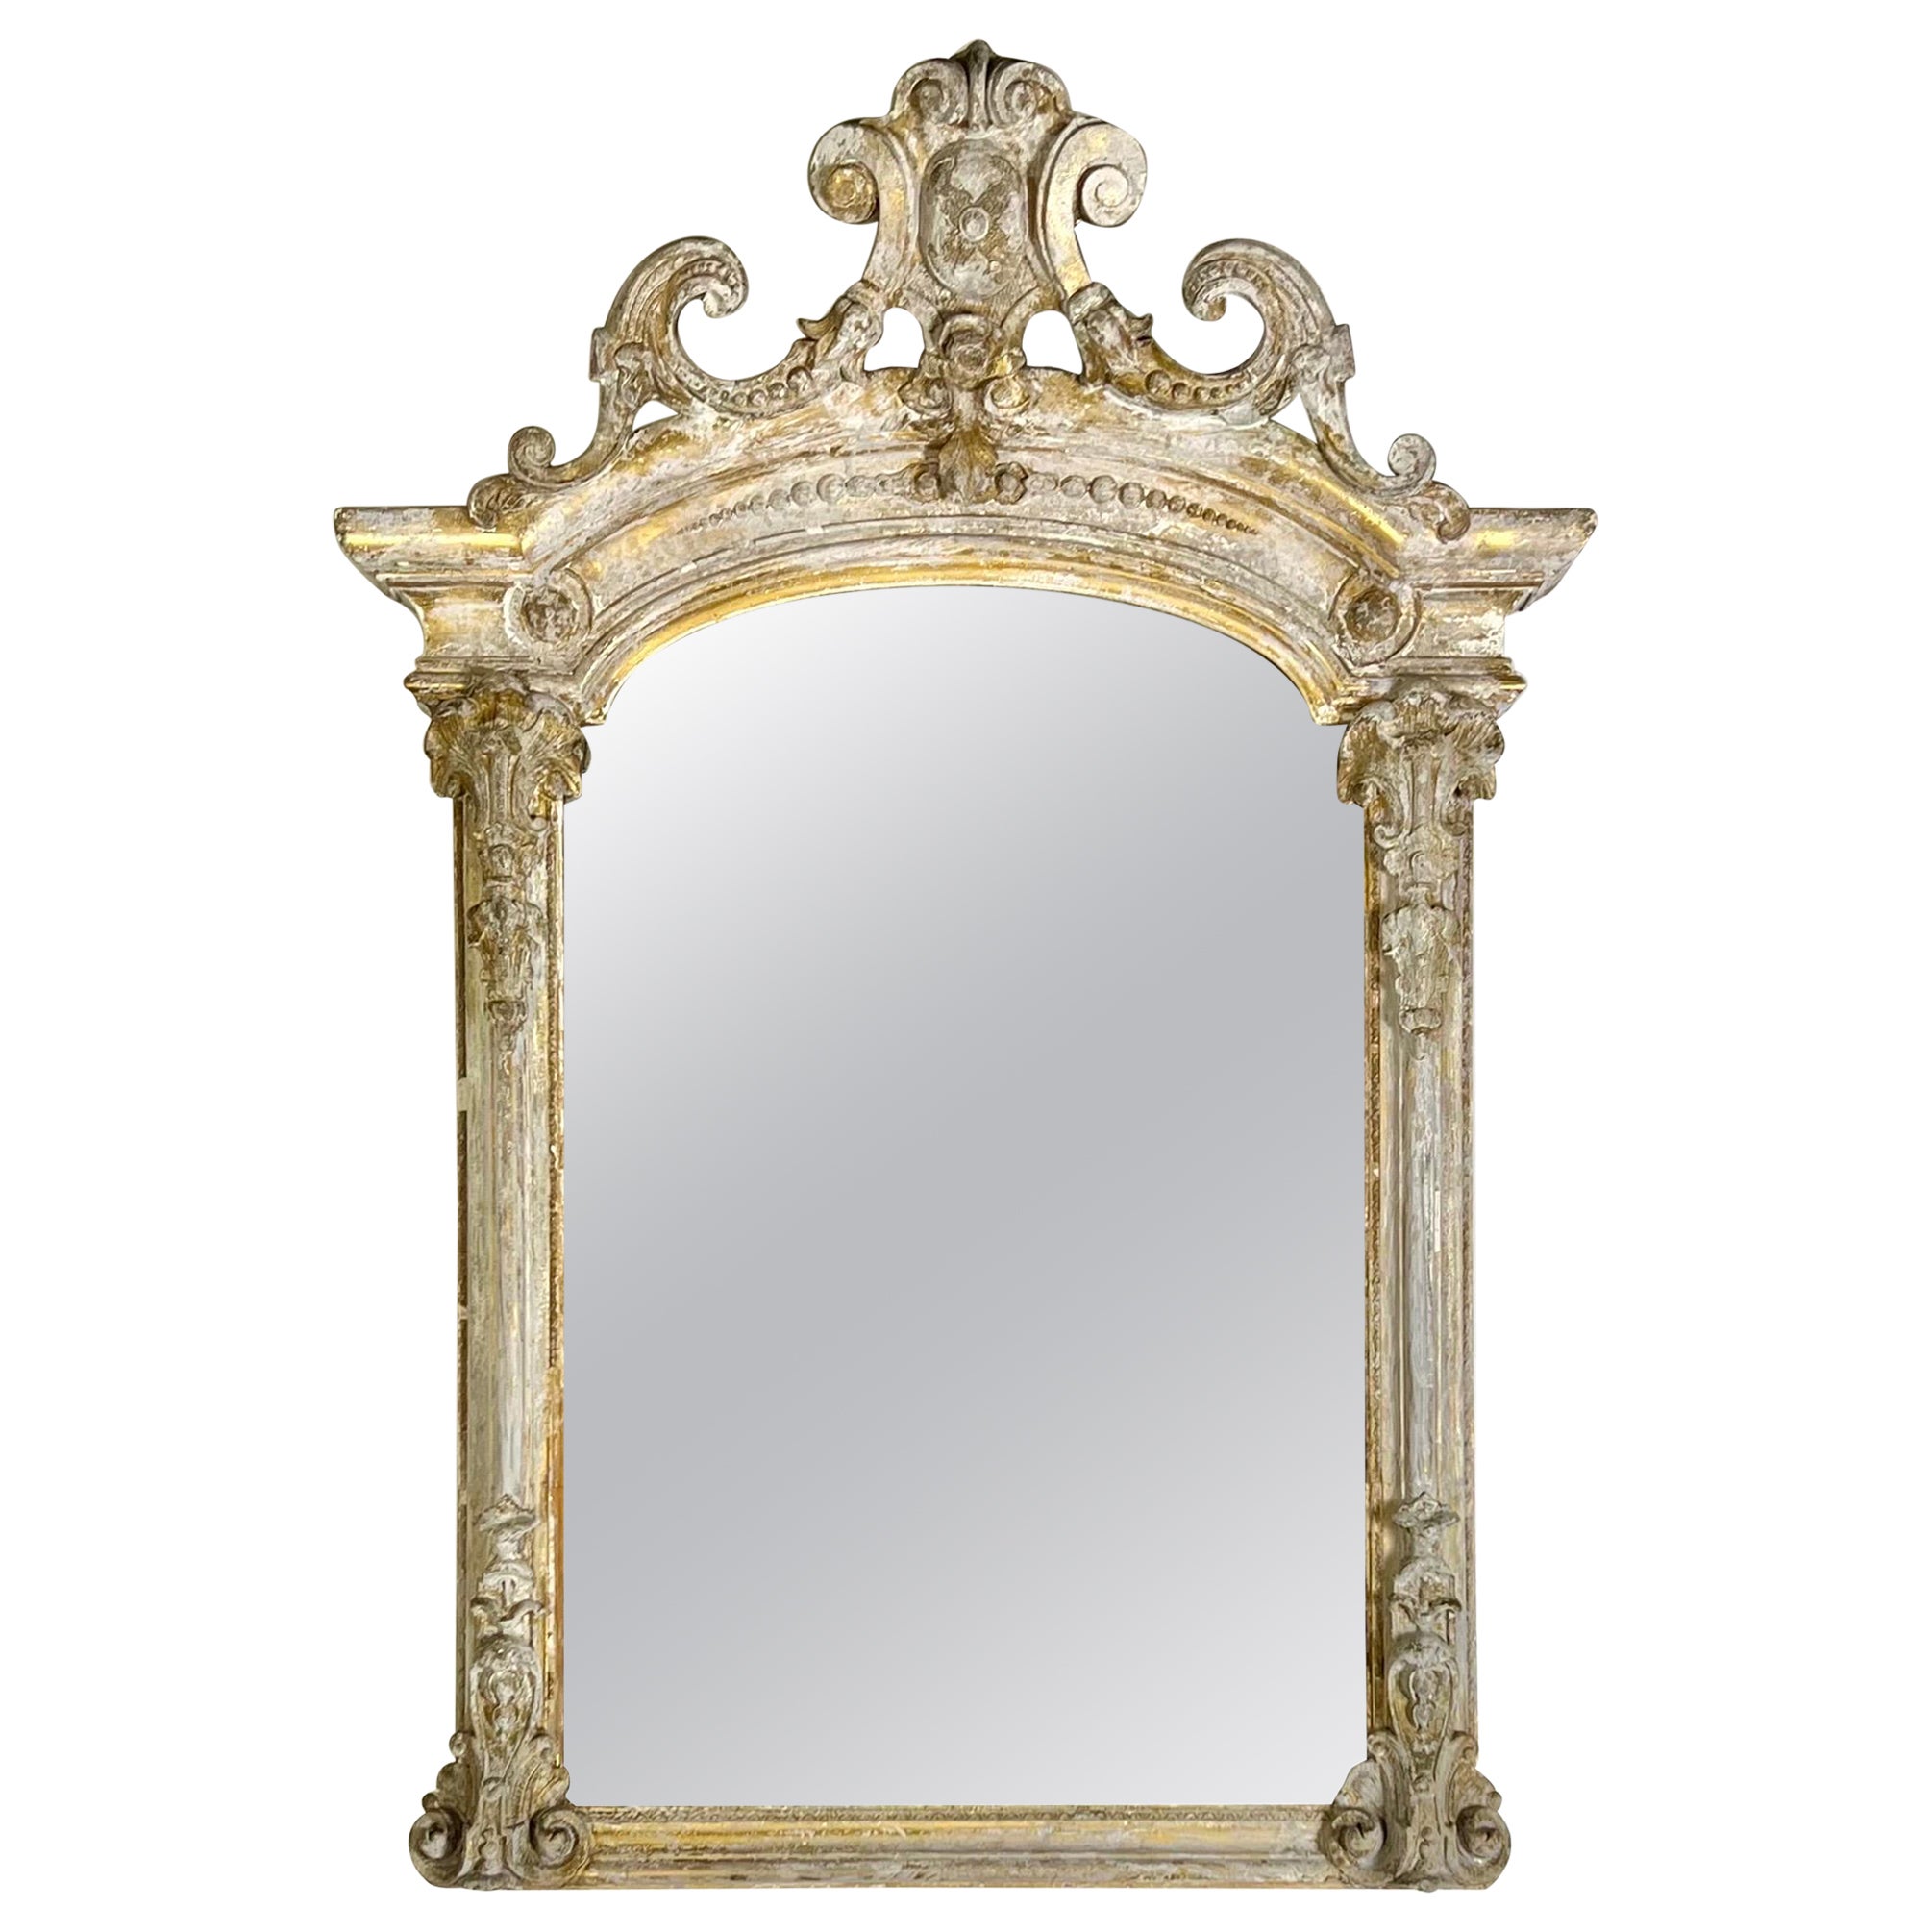 Miroir peint de style rococo français du XIXe siècle